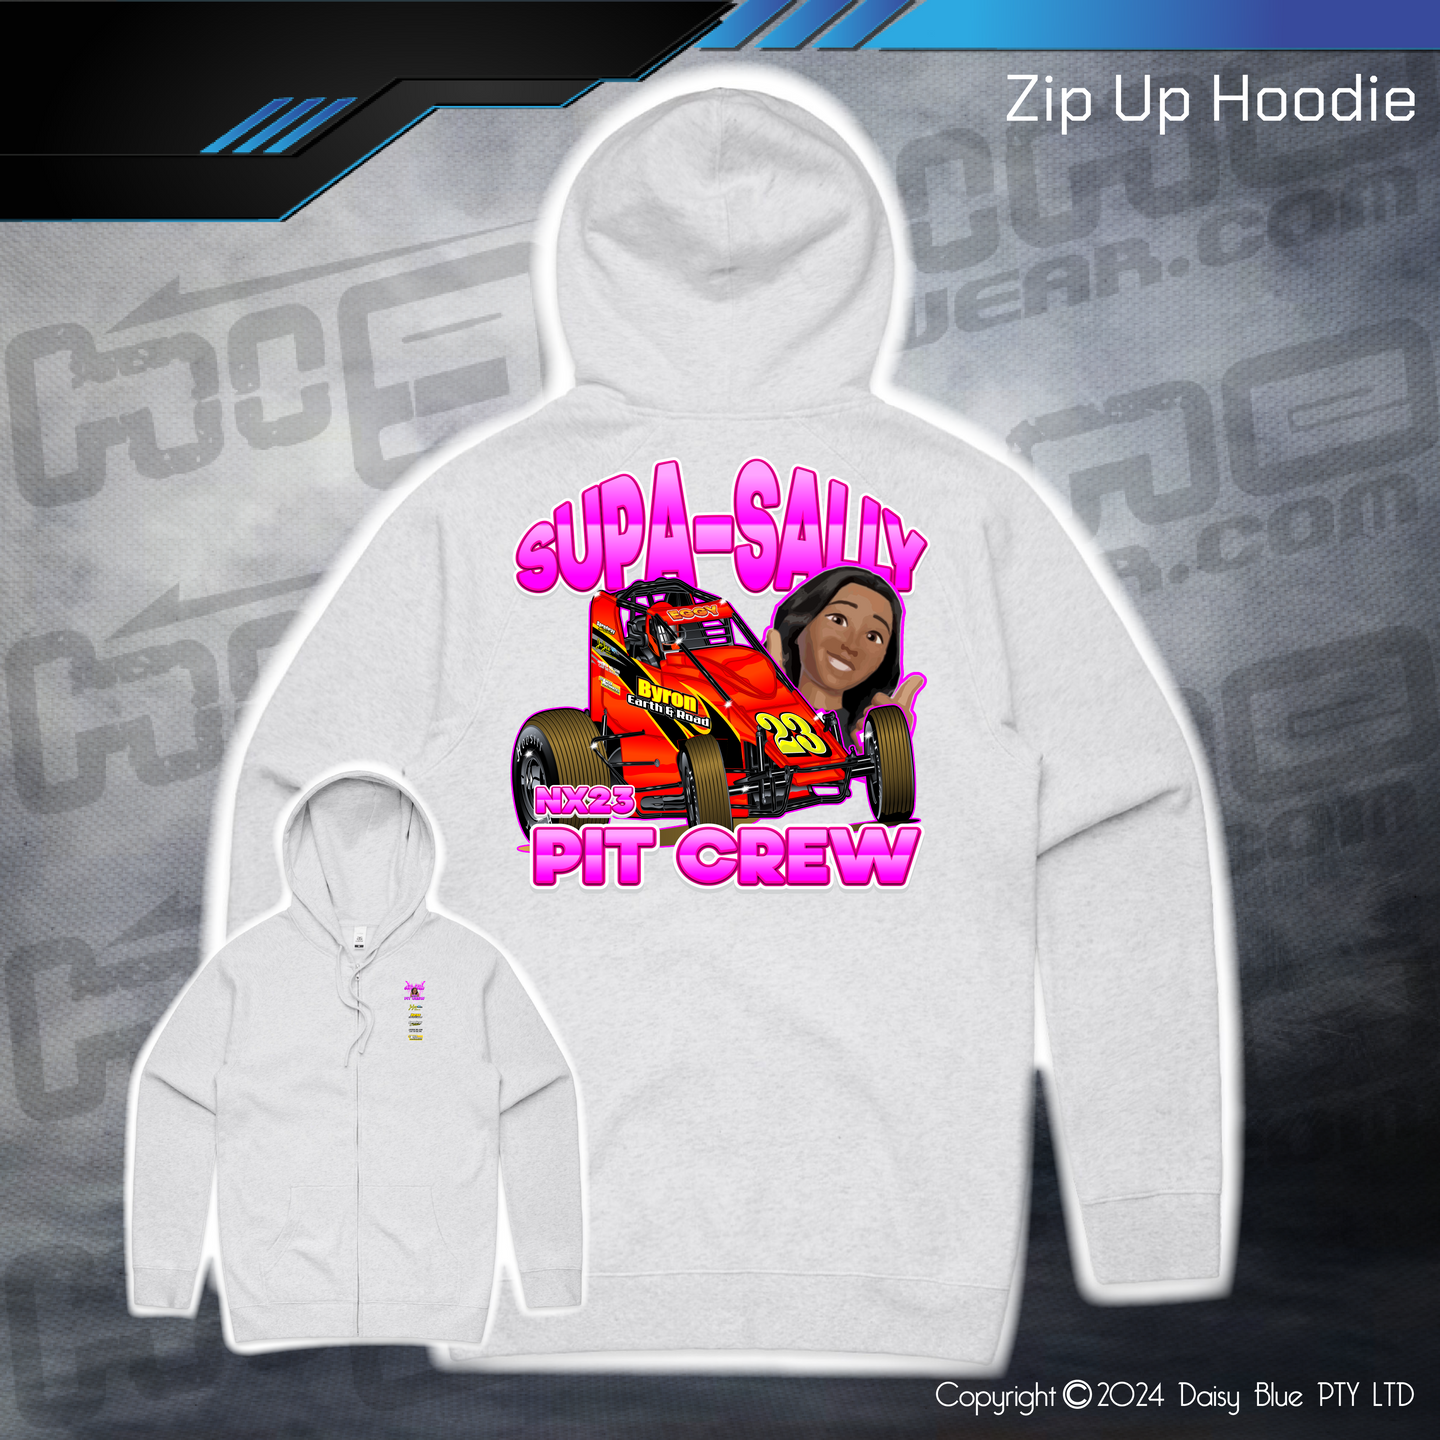 Zip Up Hoodie - Supa-Sally